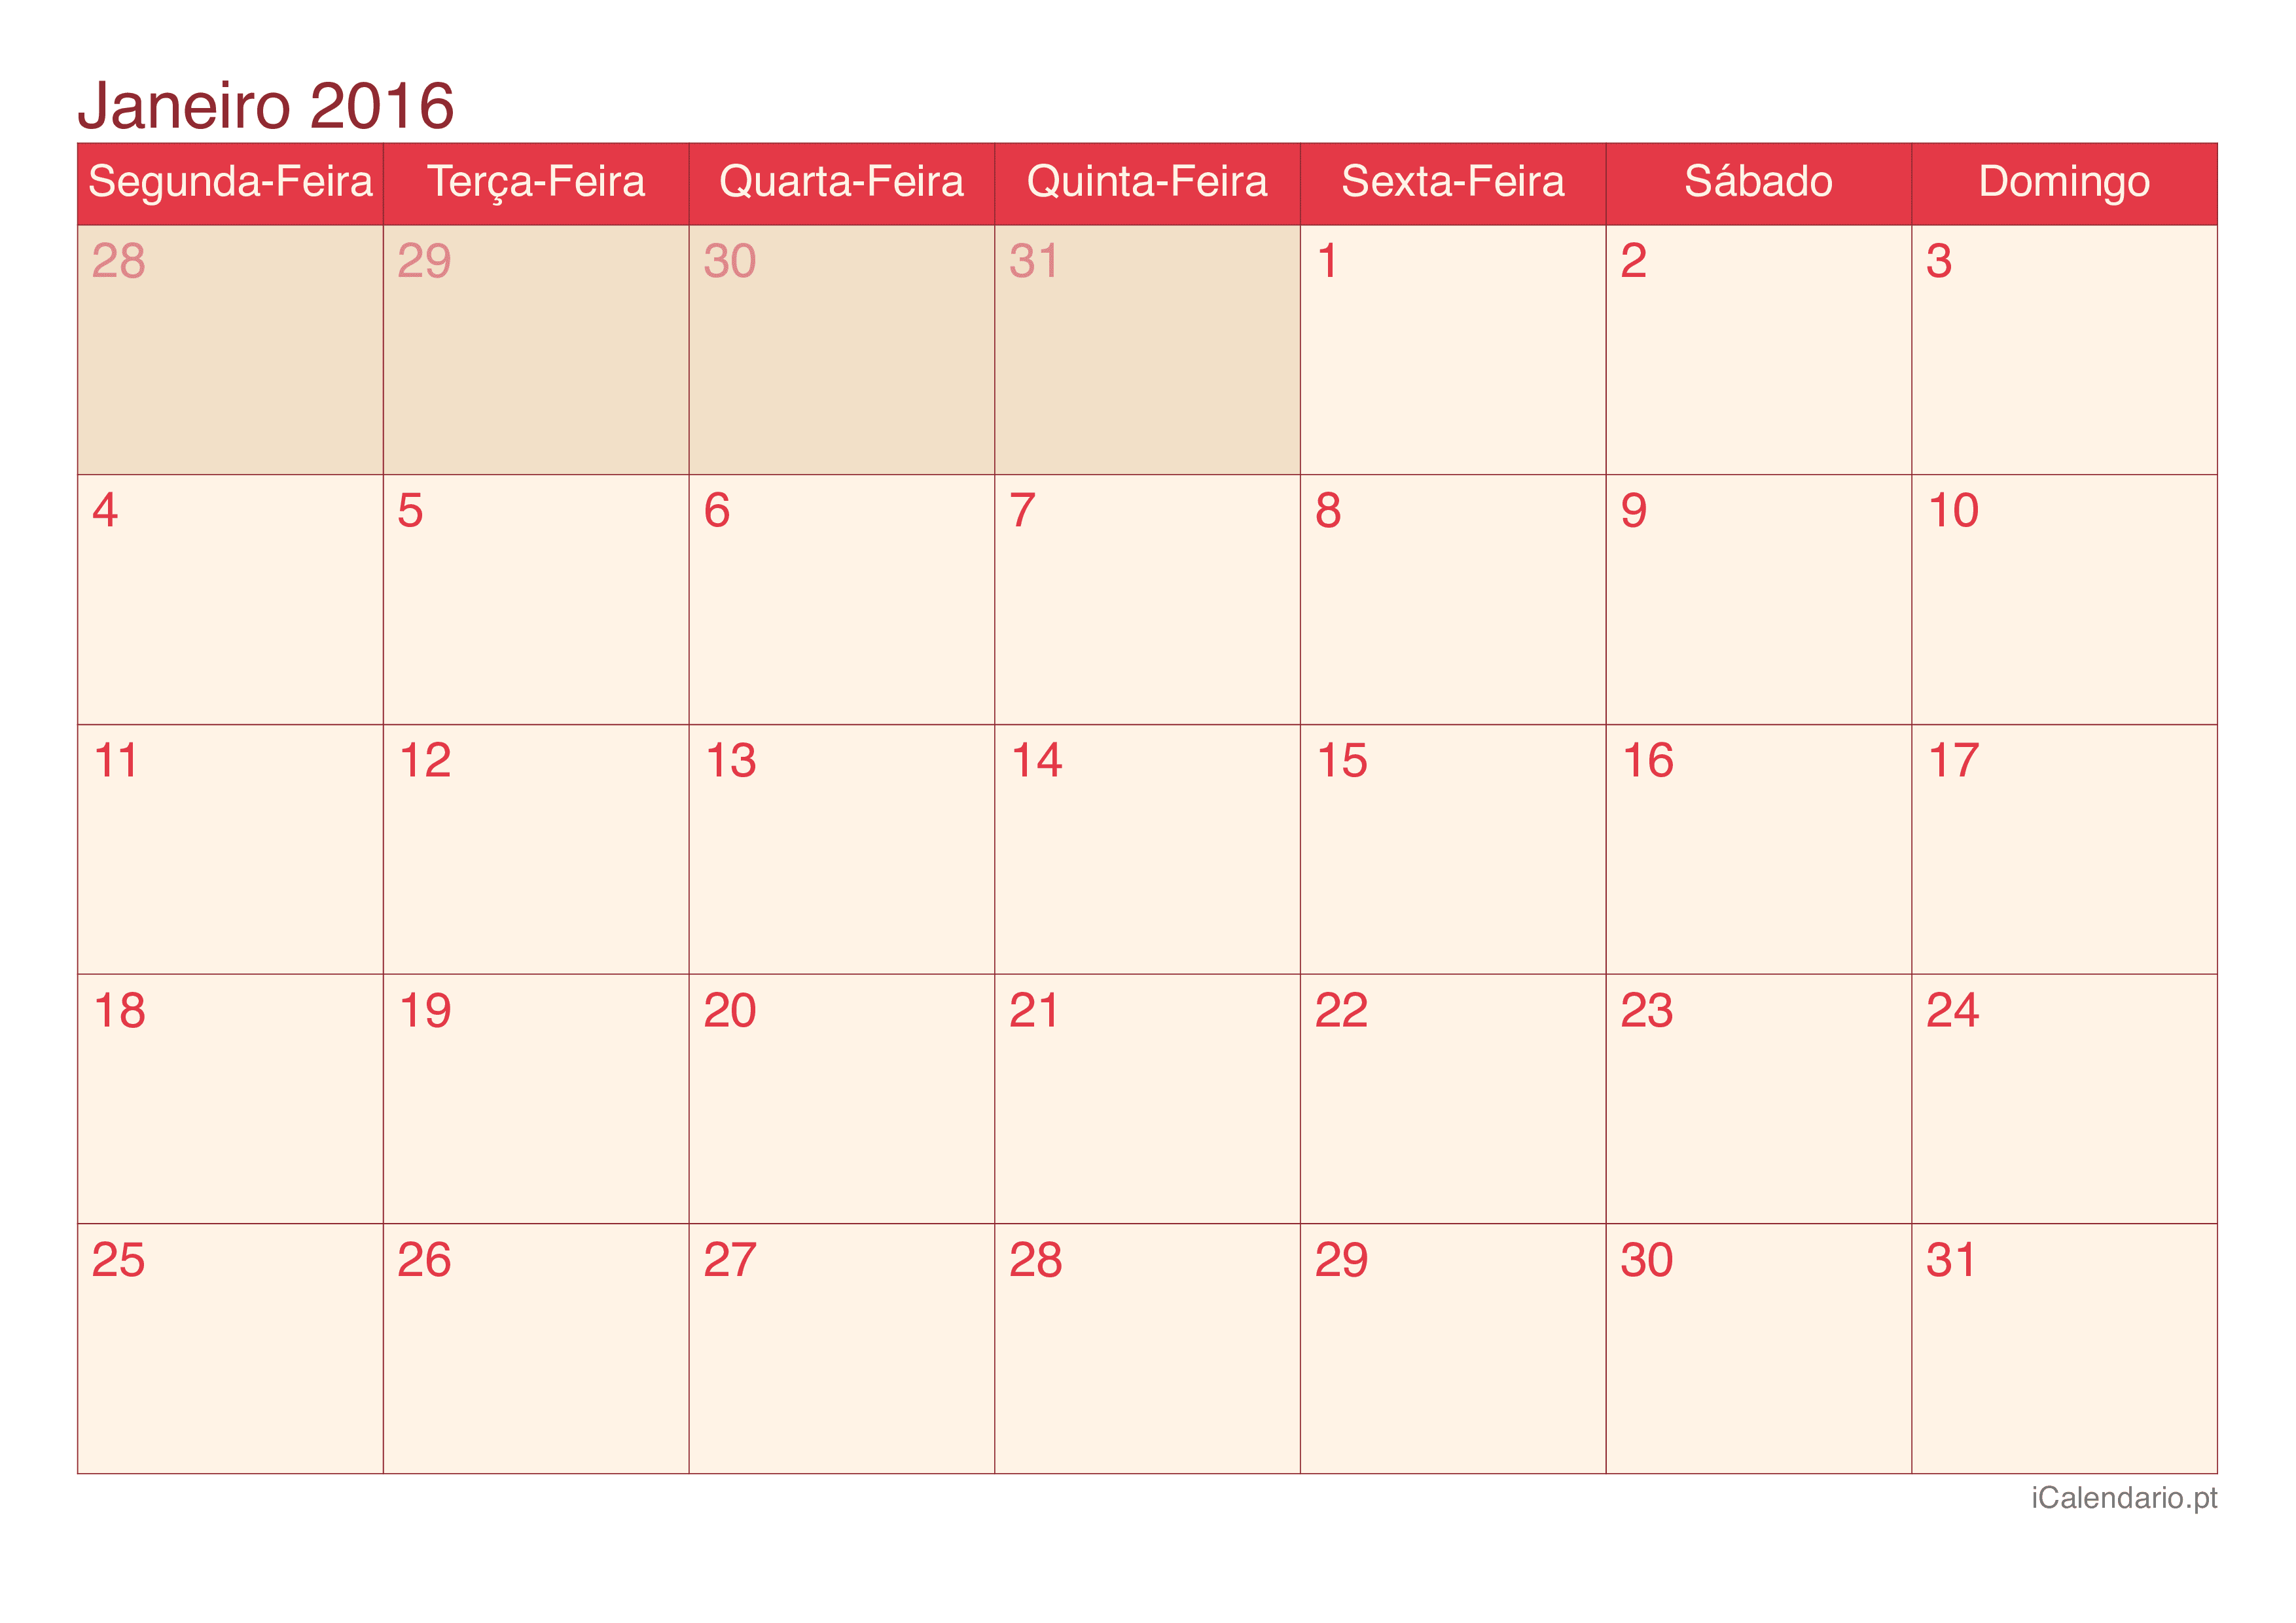 Calendário de janeiro 2016 - Cherry